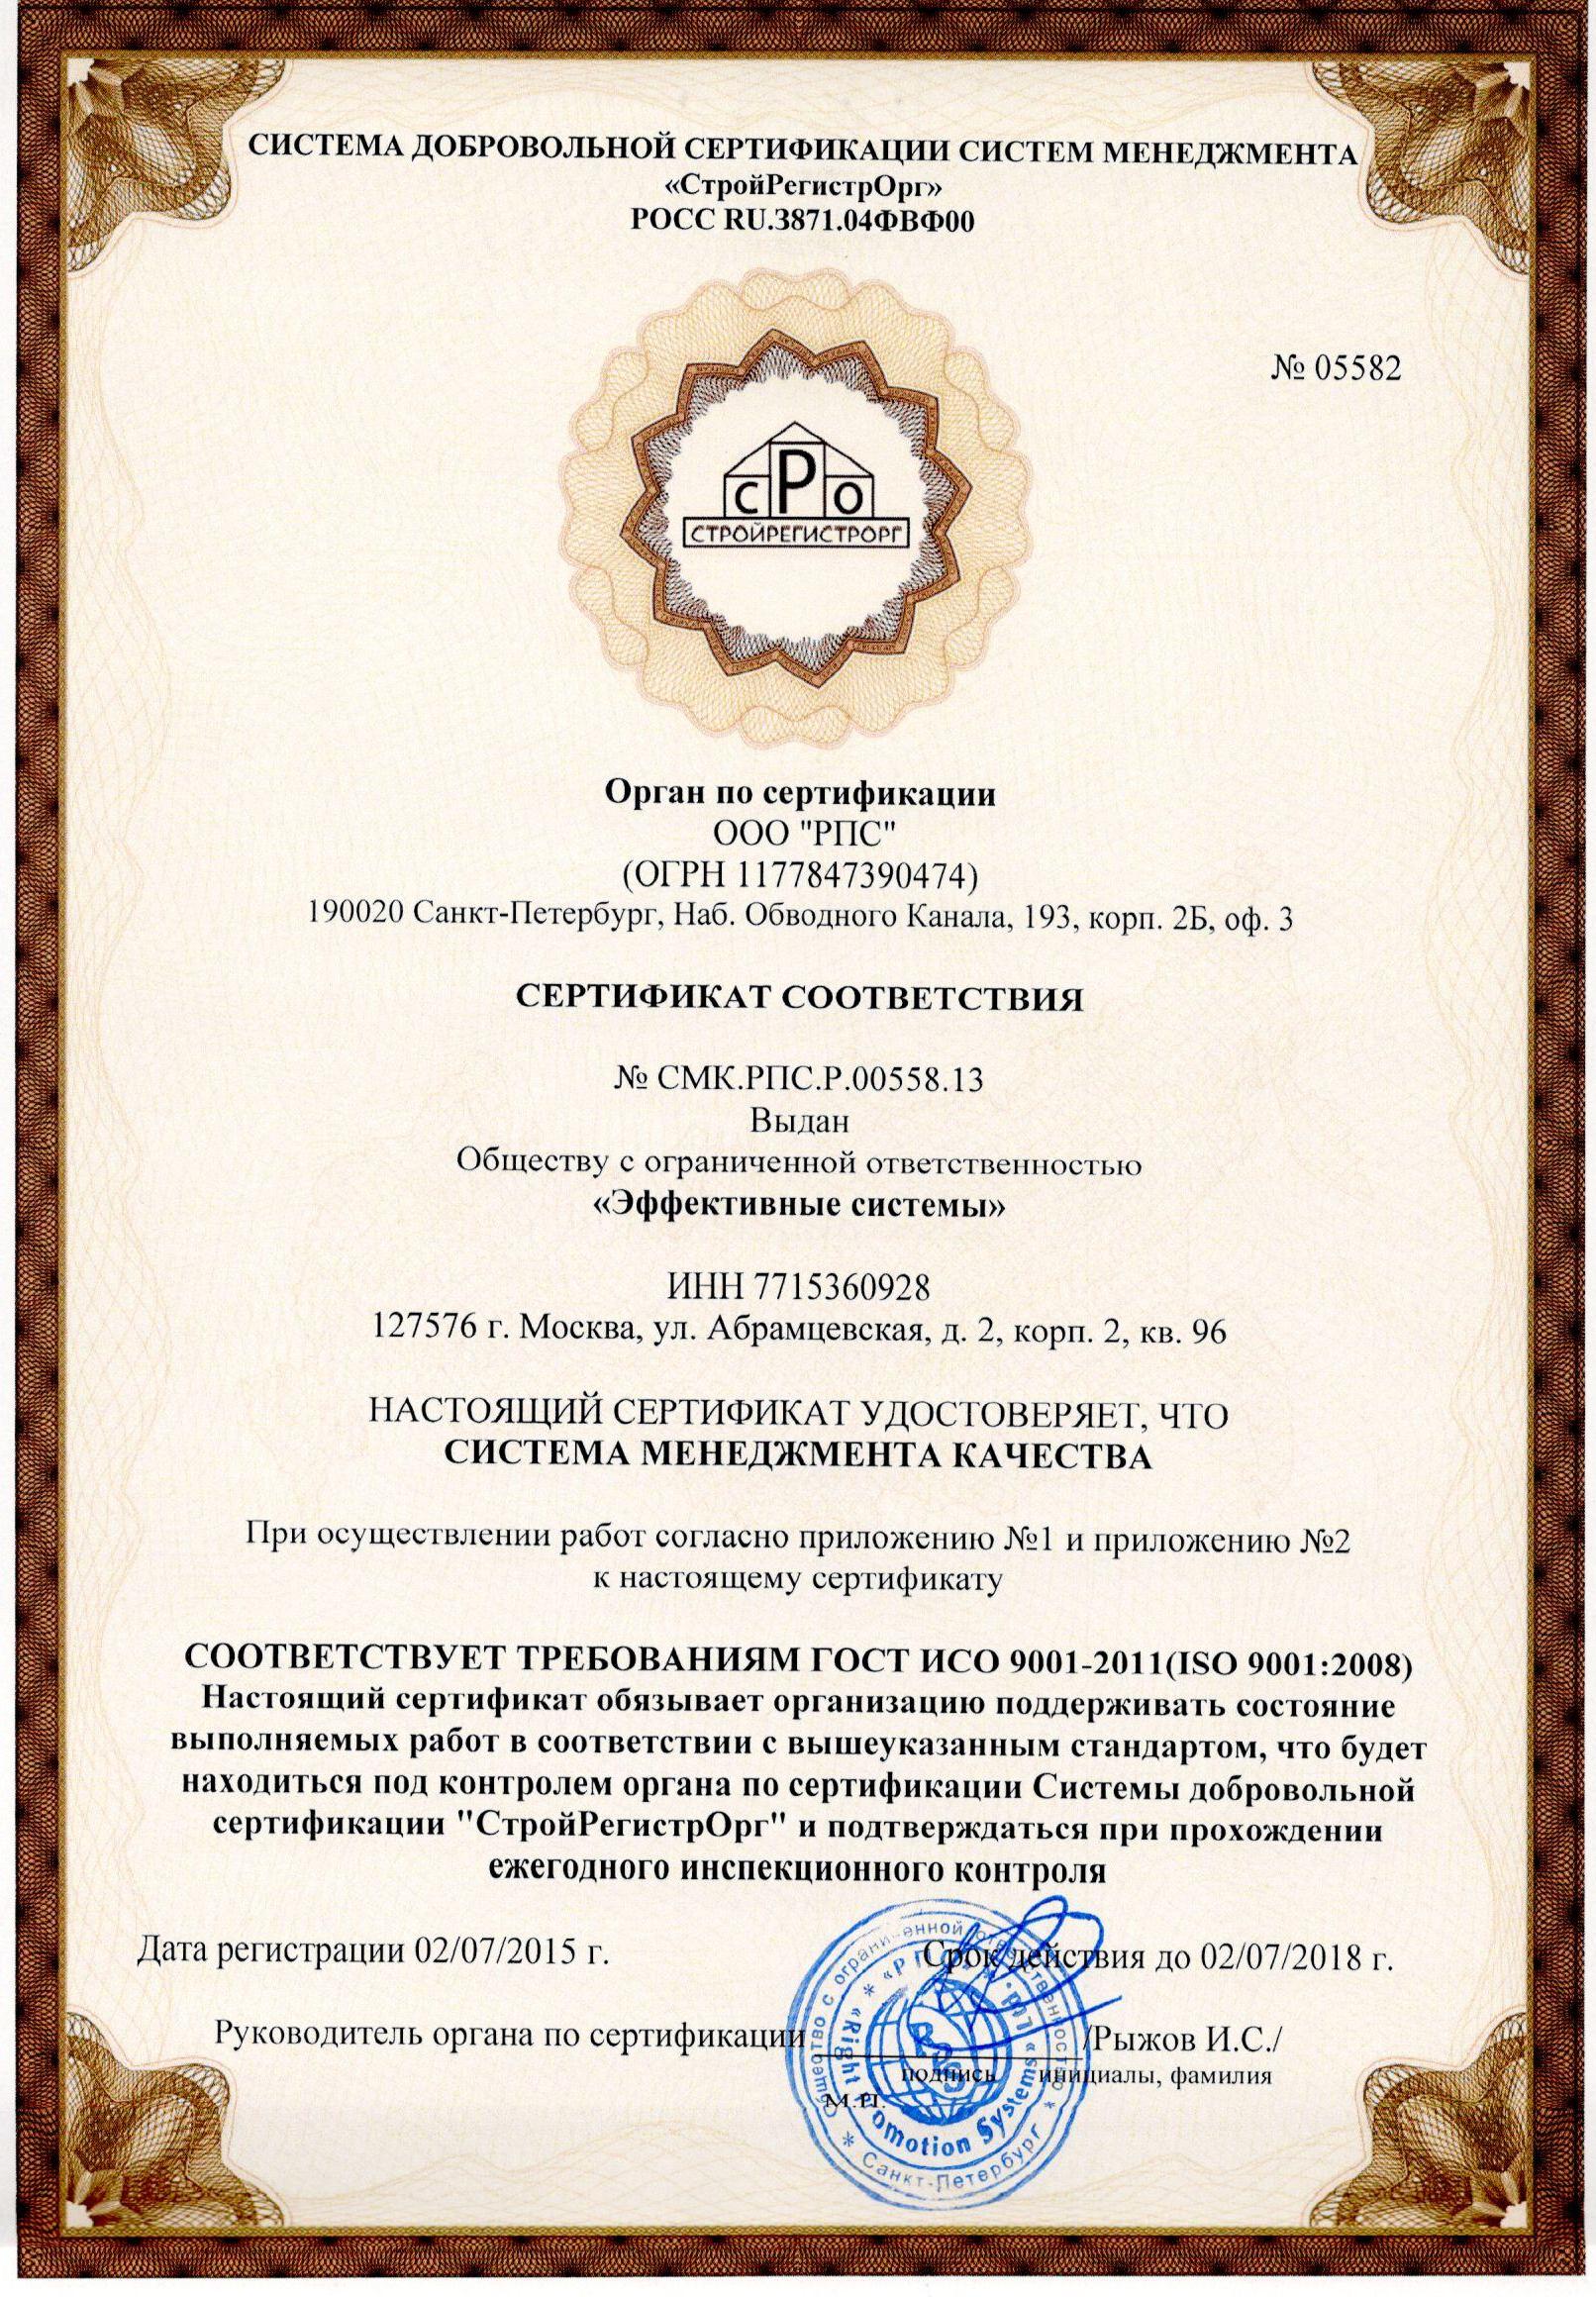 Сертификат системы
менеджмента качества ГОСТ ИСО 9001-2011 (ISO 9001:2008)